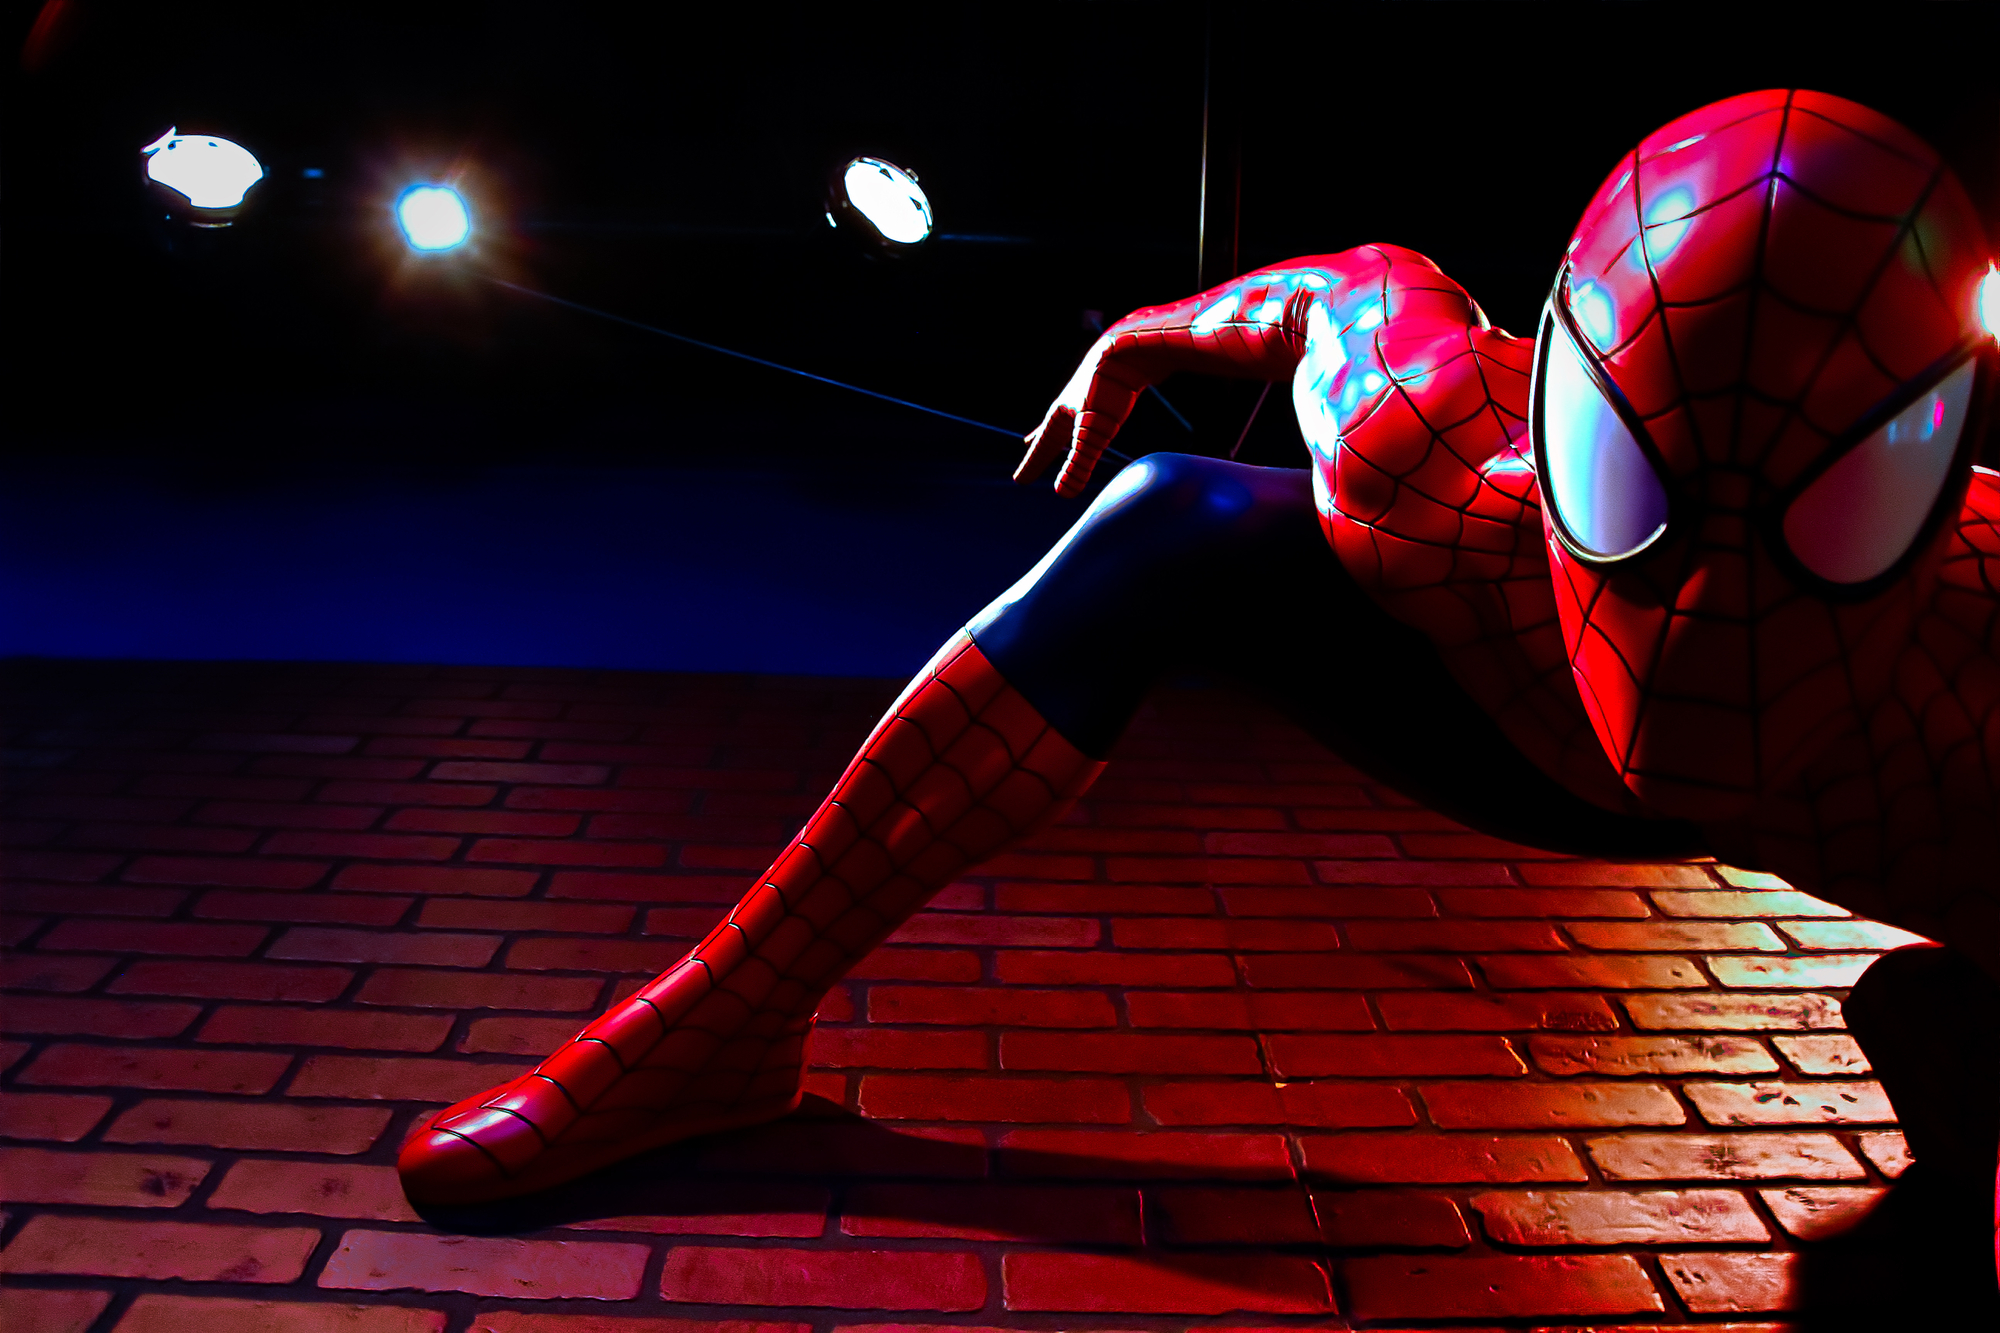 Ser fregón es tener un superpoder, y con eso, hay una responsabilidad (como dijeran en Spiderman).